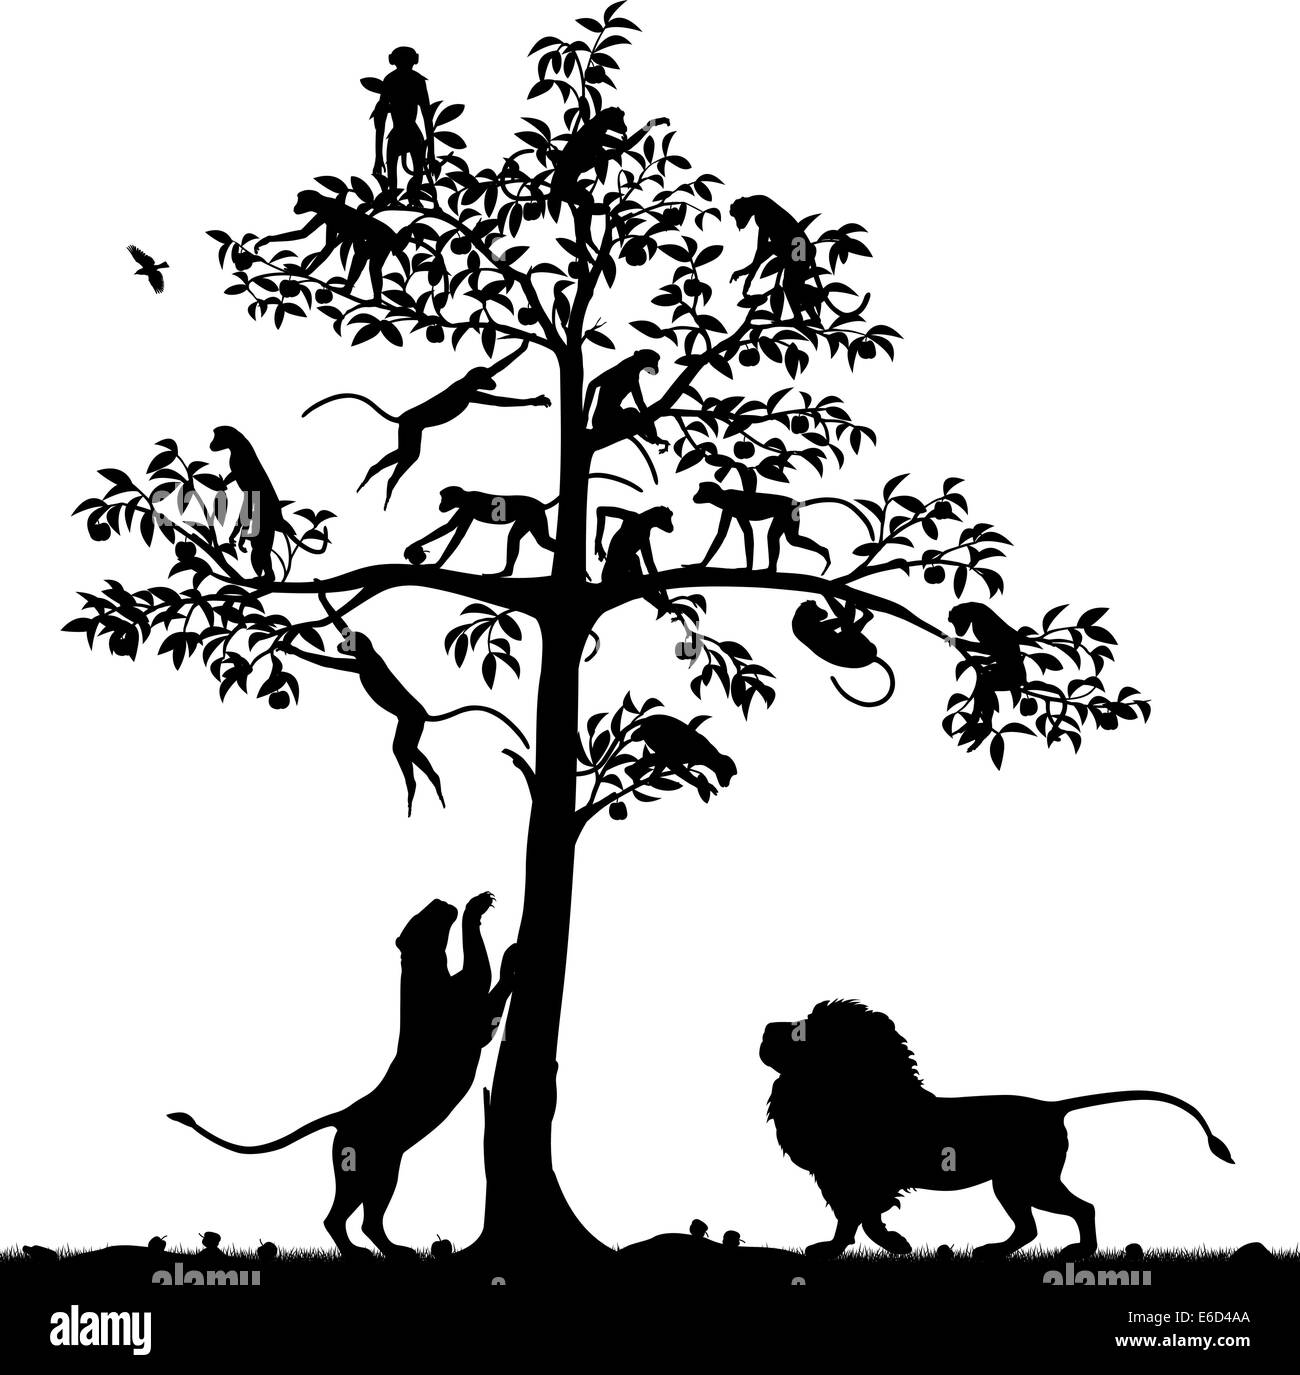 Silueta vectorial editable de monos en un árbol y un par de leones de abajo con todas las cifras como objetos separados Ilustración del Vector